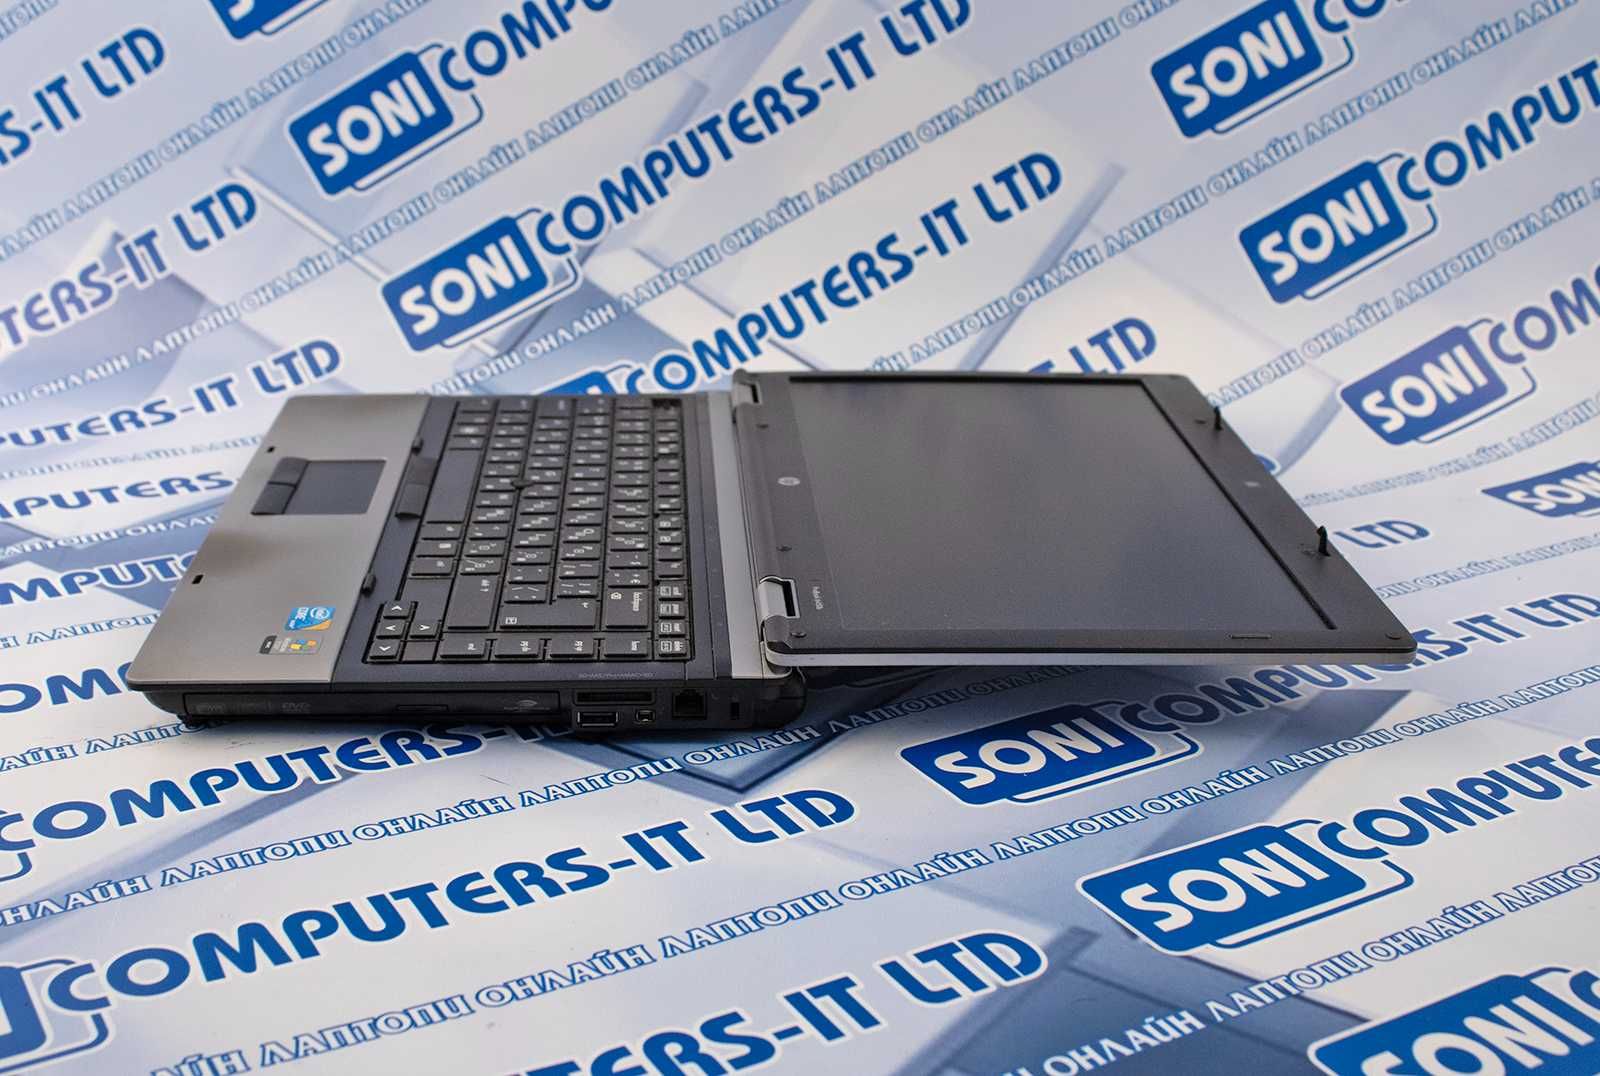 Лаптоп HP ProBook 6450b/I5-M450/ 4GB DDR3 / 240GB HDD/ 14"